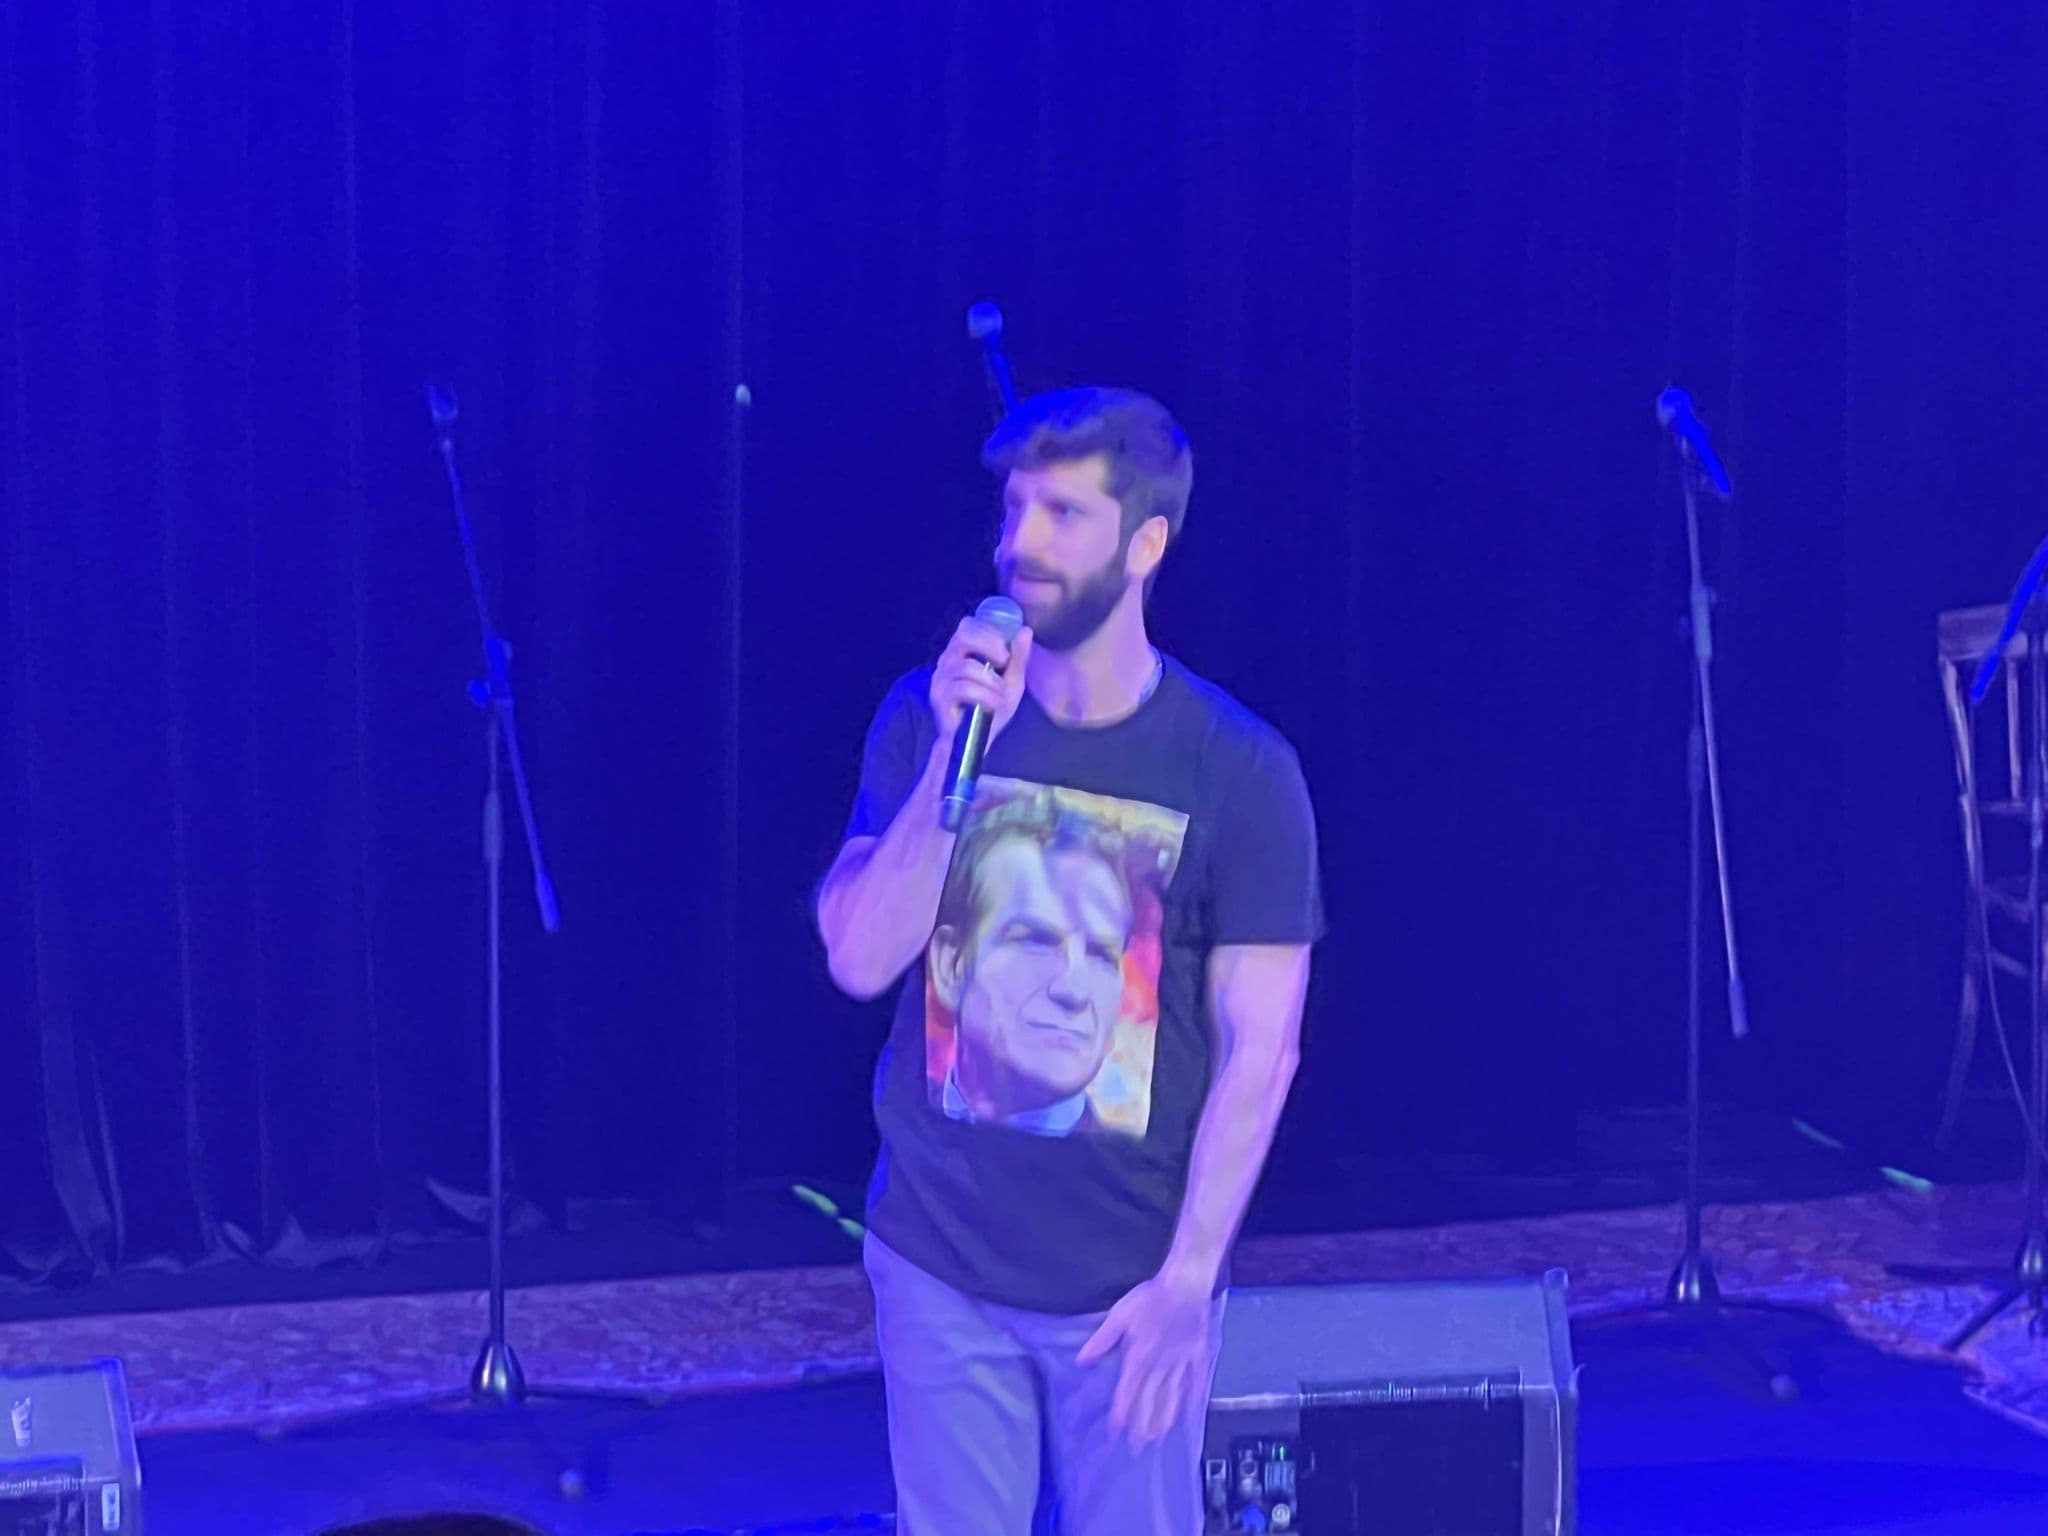 אלעד אטרקצ'י לובש חולצה של דני קושמרו. צילום: דפנה הראל כפיר